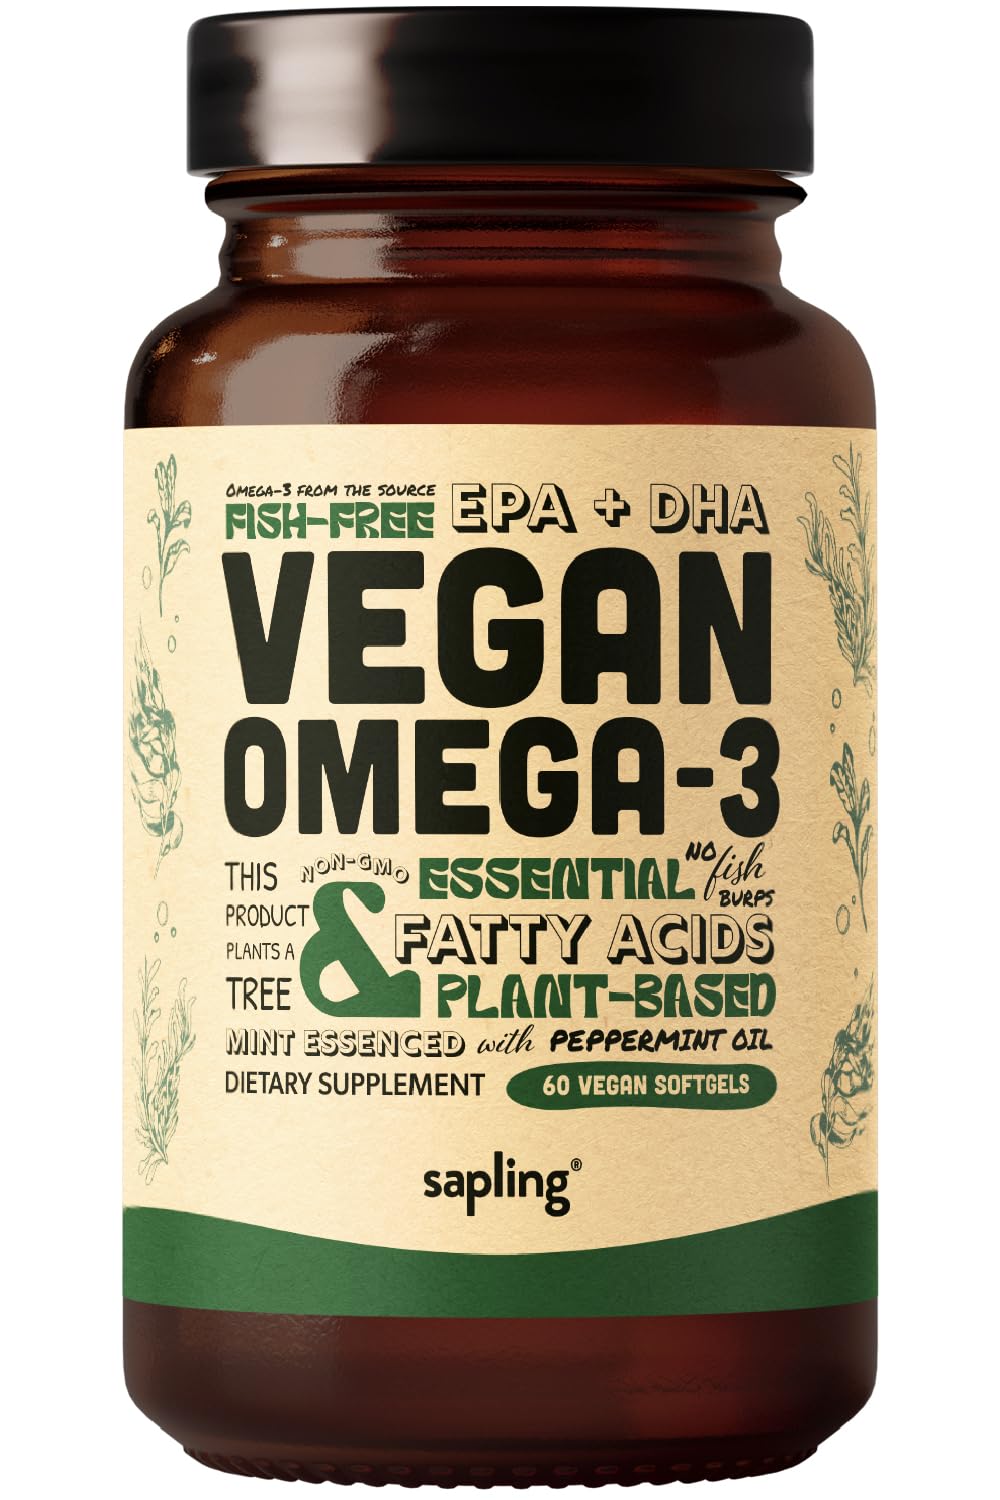 Vegan Omega 3 Supplement